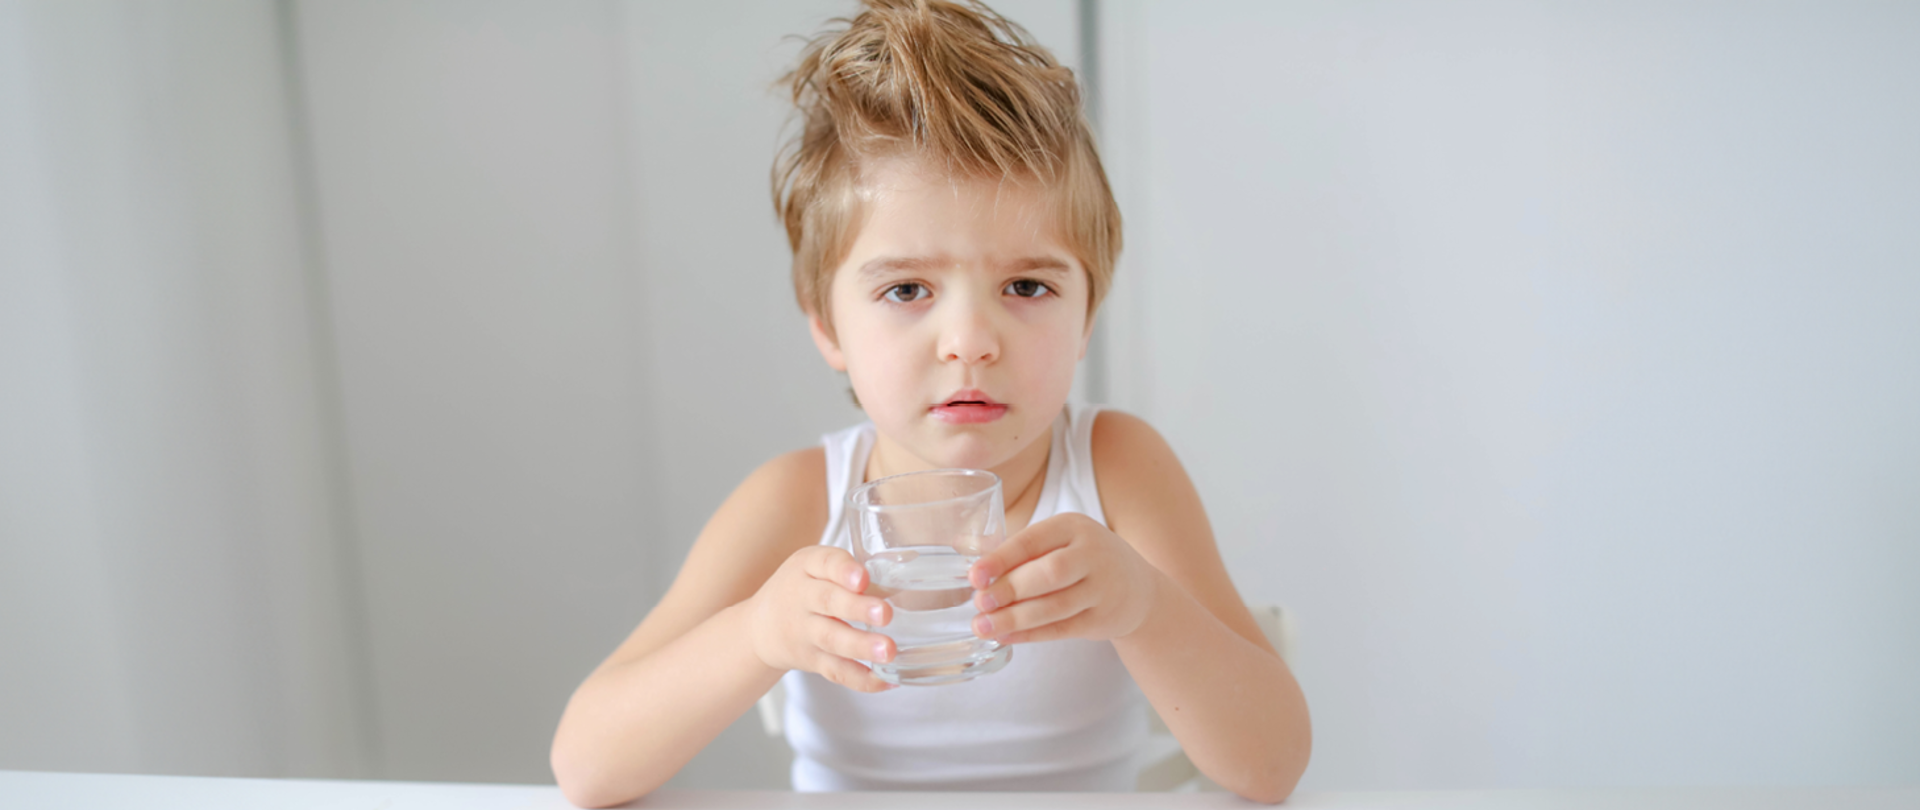 Na zdjęciu widoczne dziecko trzymające szklankę z wodą